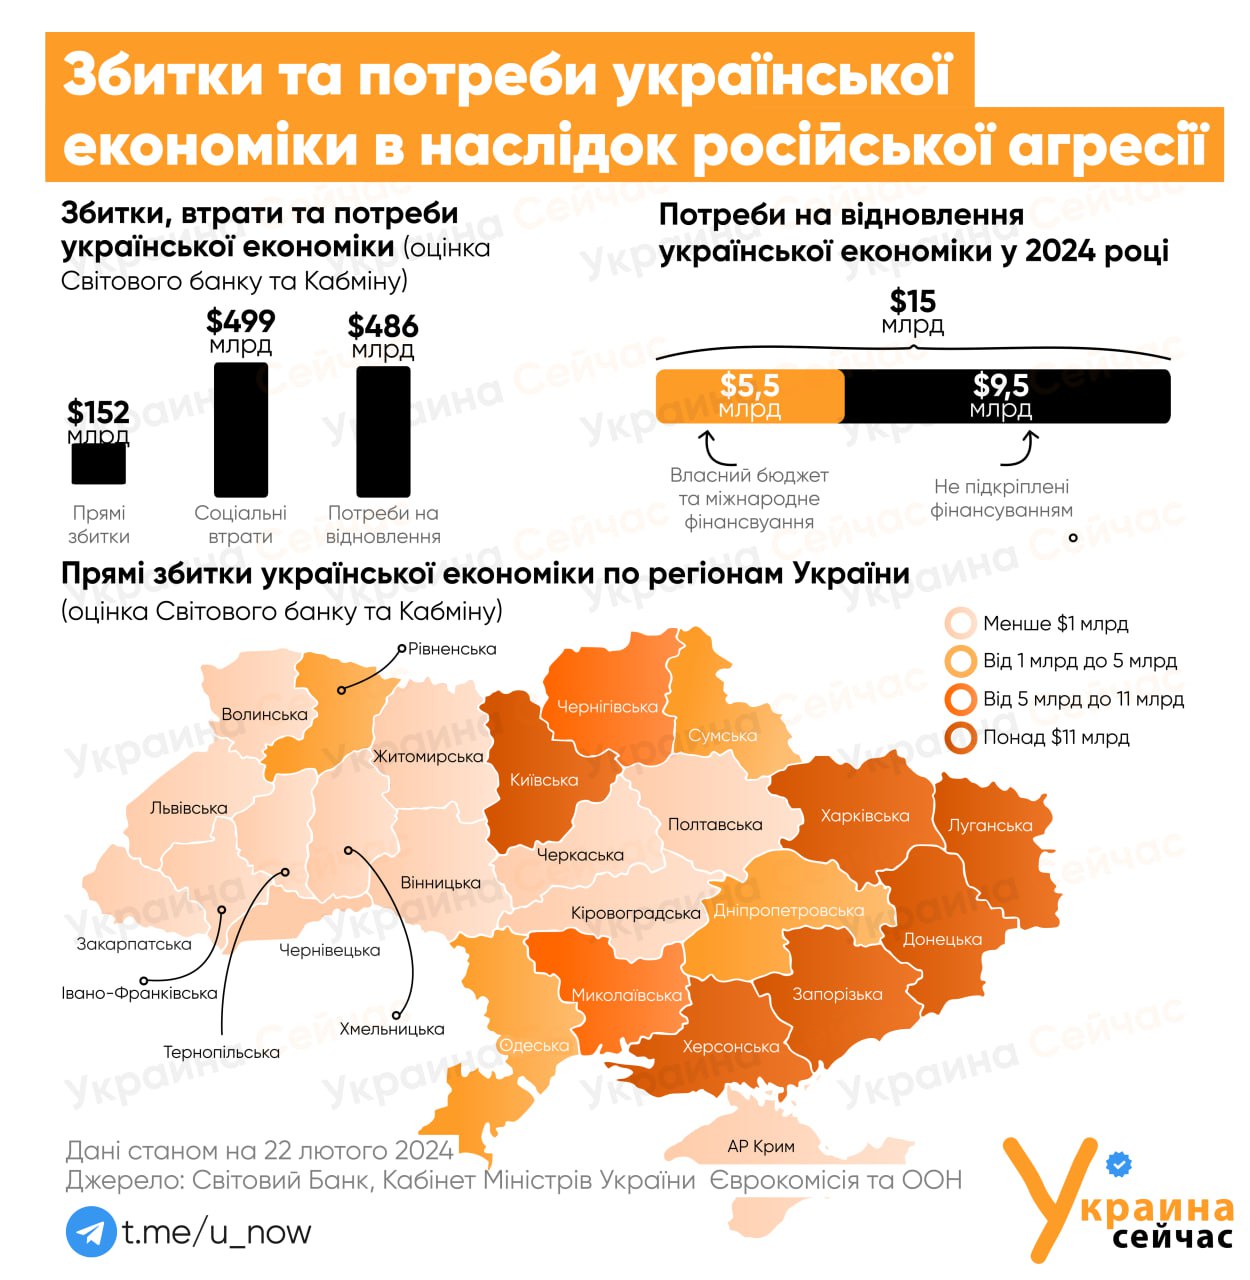 На восстановление Украины потребуется $486 млрд в течение следующего десятилетия - ИНФОГРАФИКА